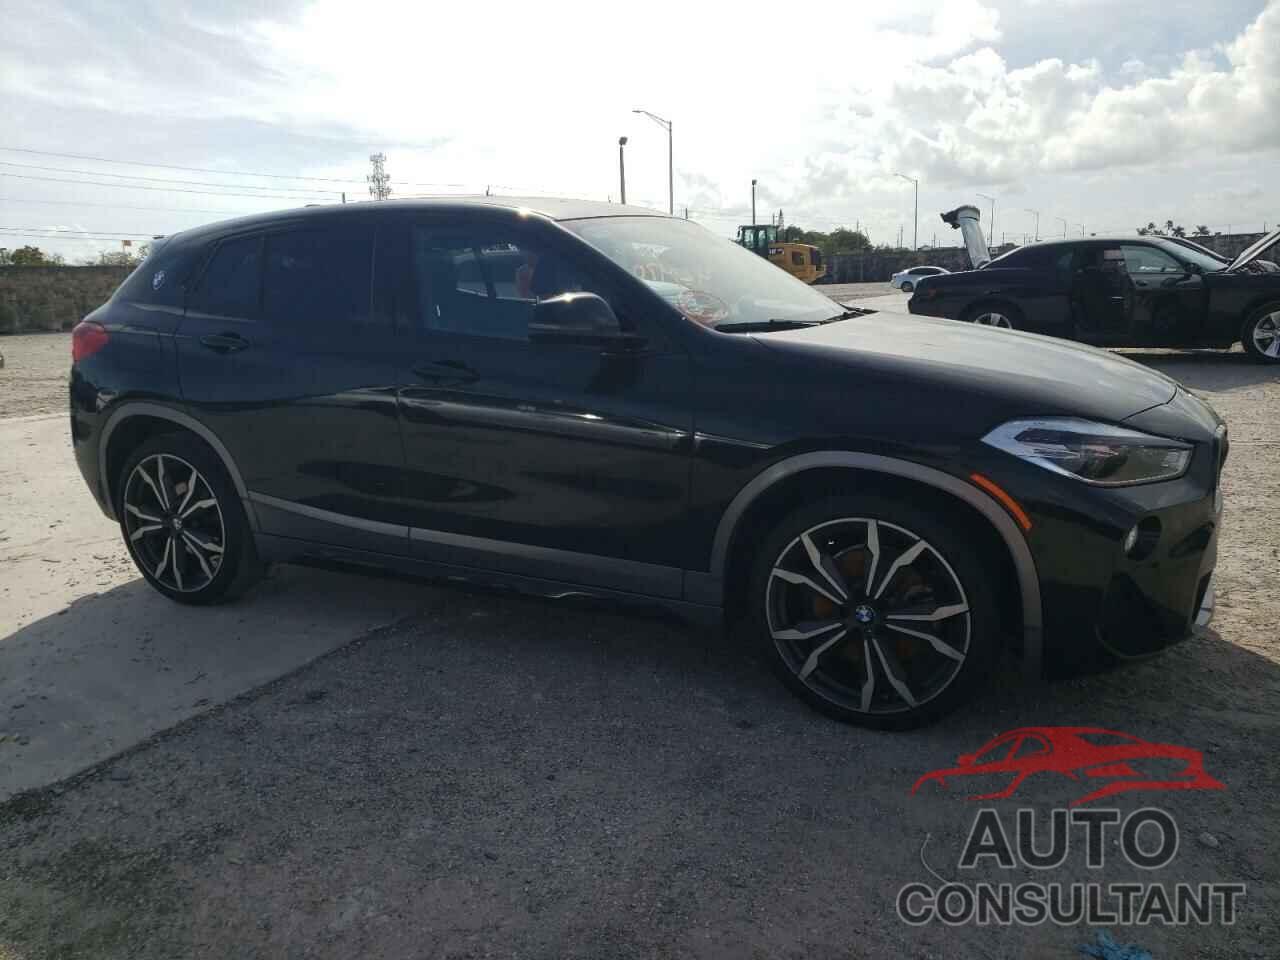 BMW X2 2020 - WBXYH9C0XL5P53217